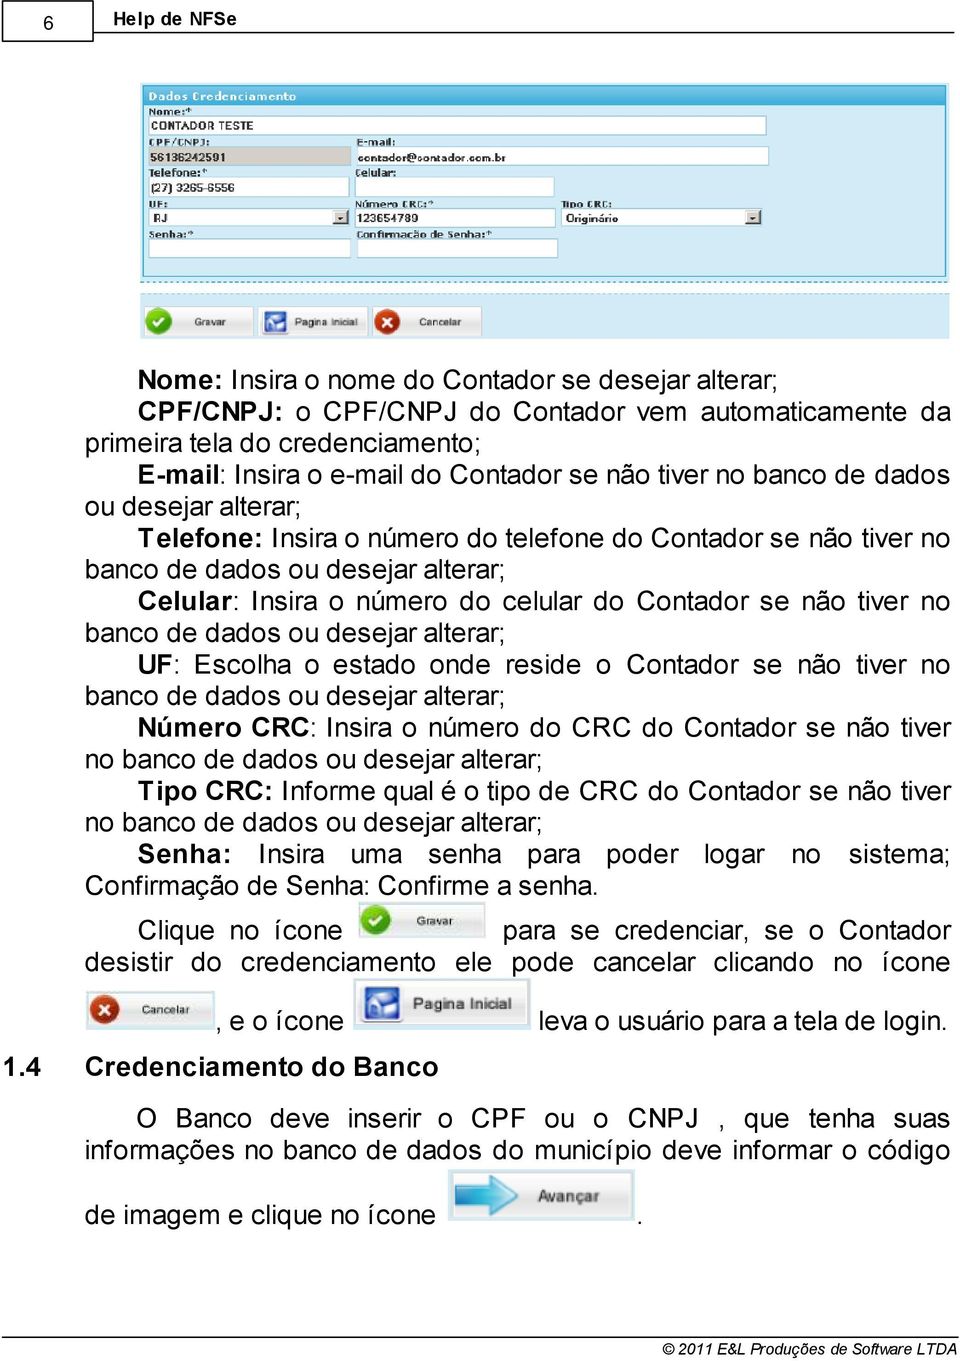 tiver no banco de dados ou desejar alterar UF: Escolha o estado onde reside o Contador se não tiver no banco de dados ou desejar alterar Número CRC: Insira o número do CRC do Contador se não tiver no